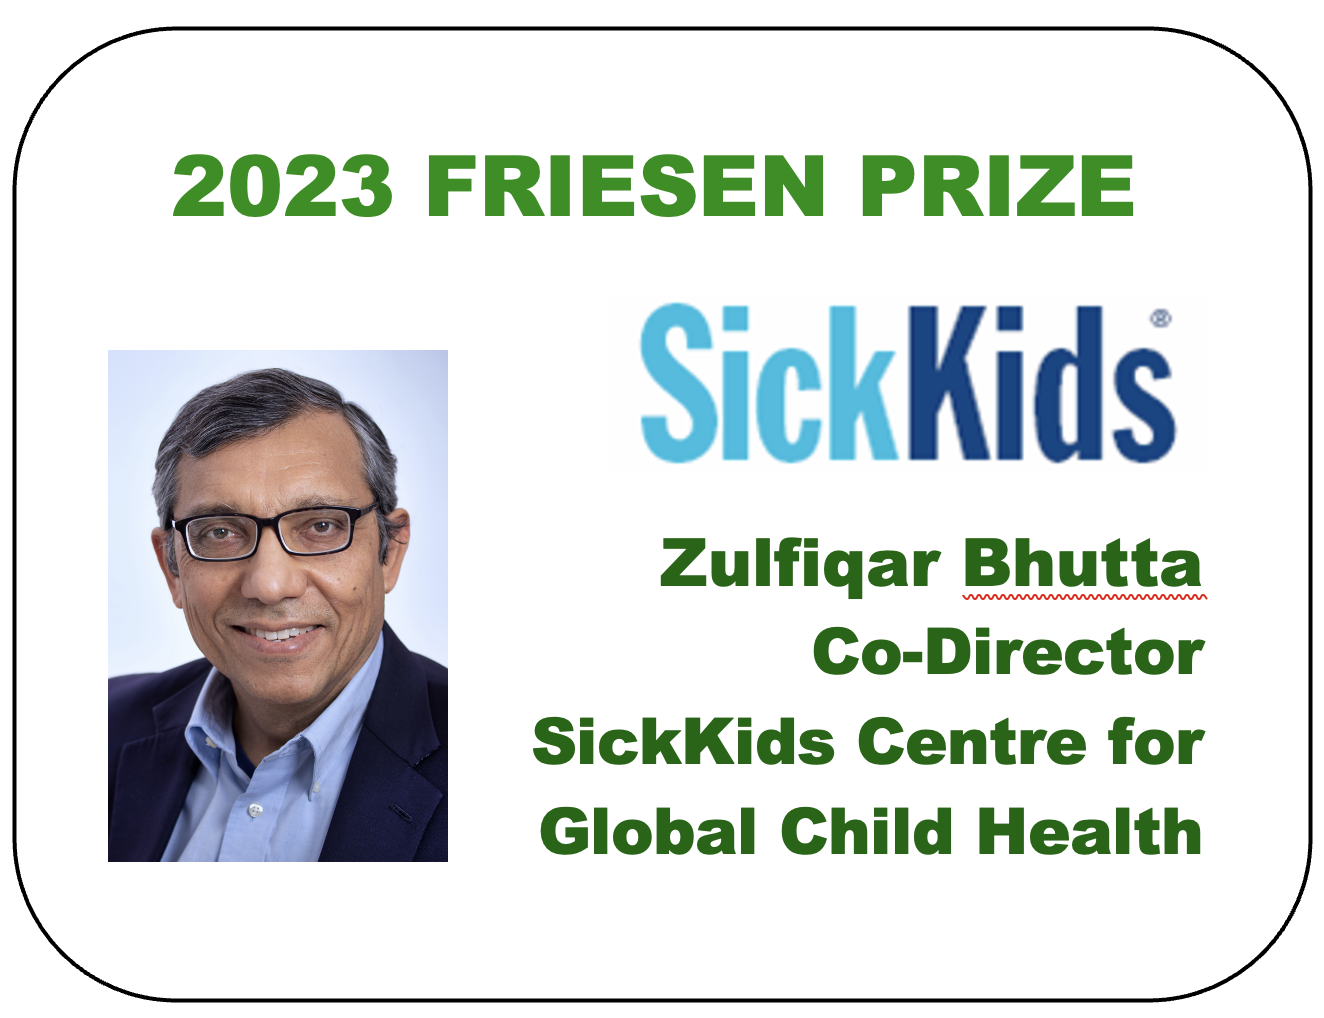 2023 Friesen Prize - Dr. Zulfiqar Bhutta